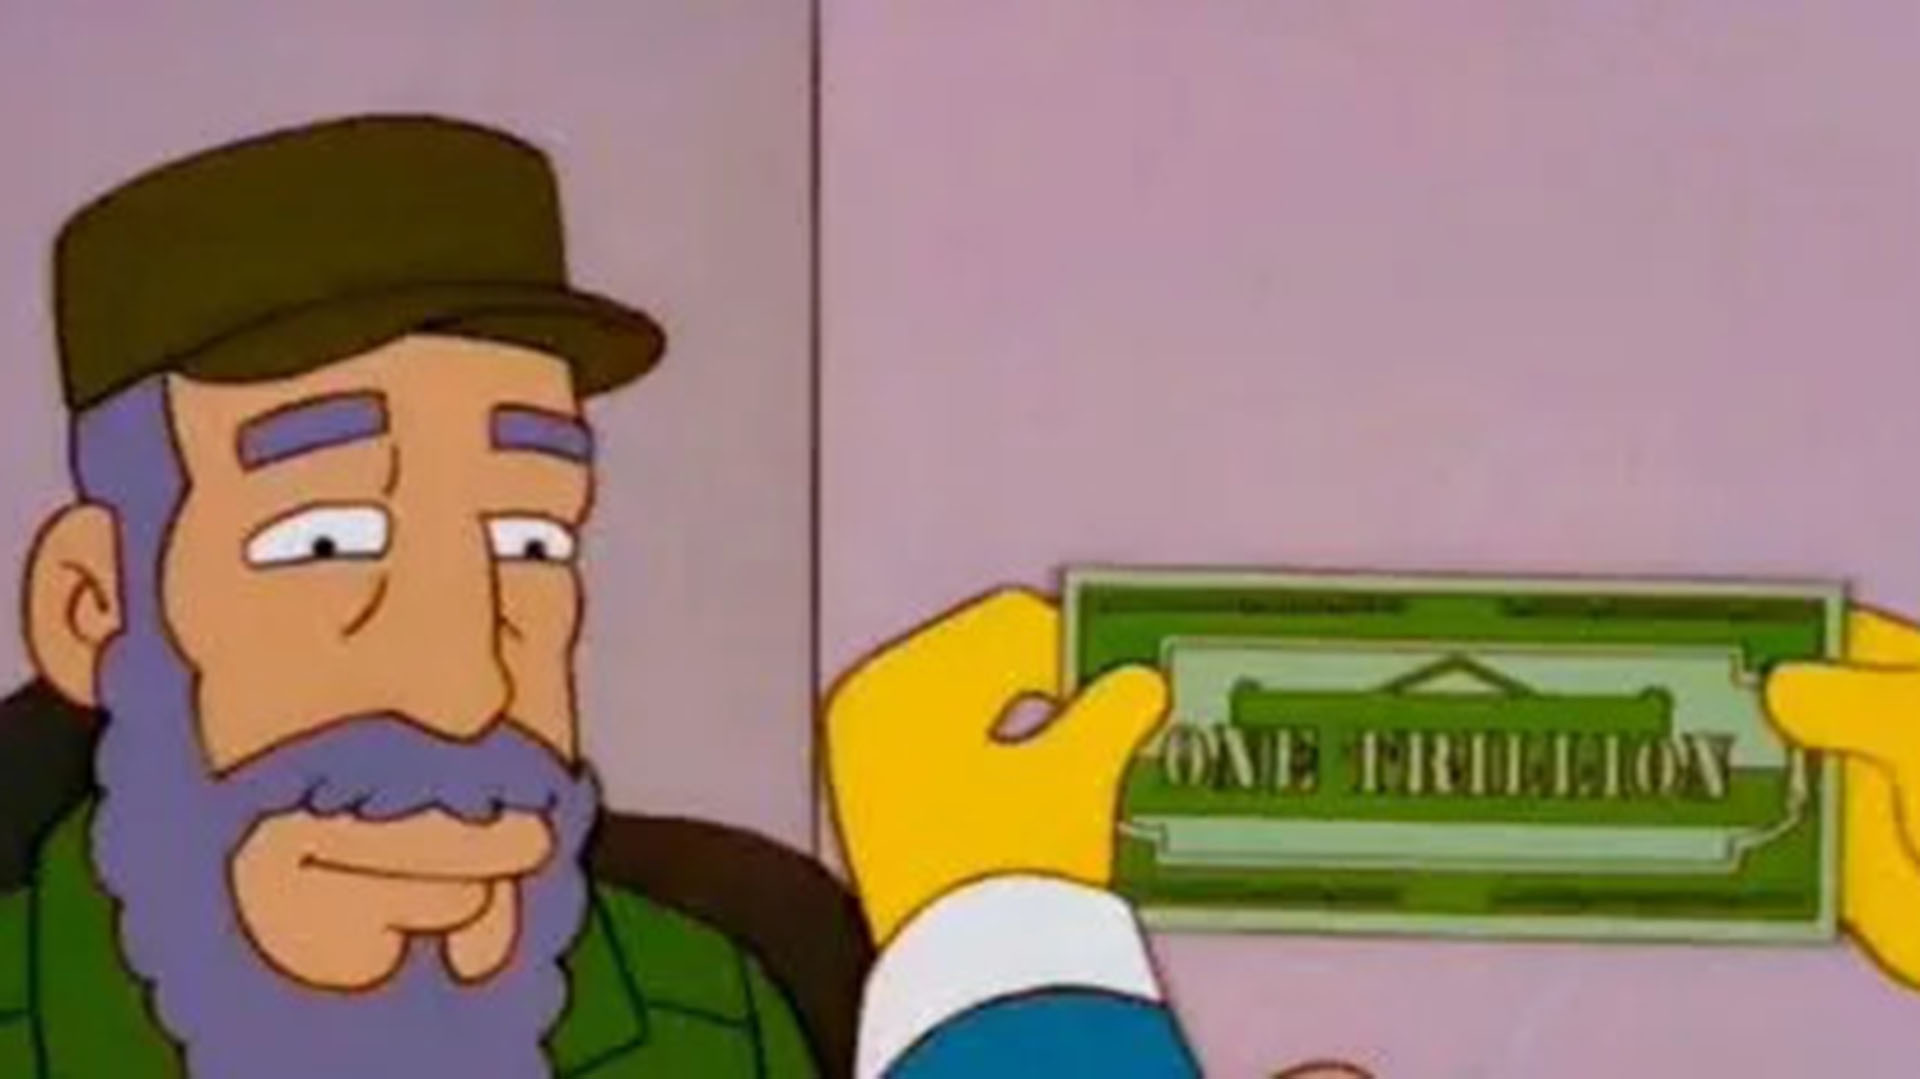 Escena del capítulo de Los Simpson sobre un billete de "un trillón de dólares"